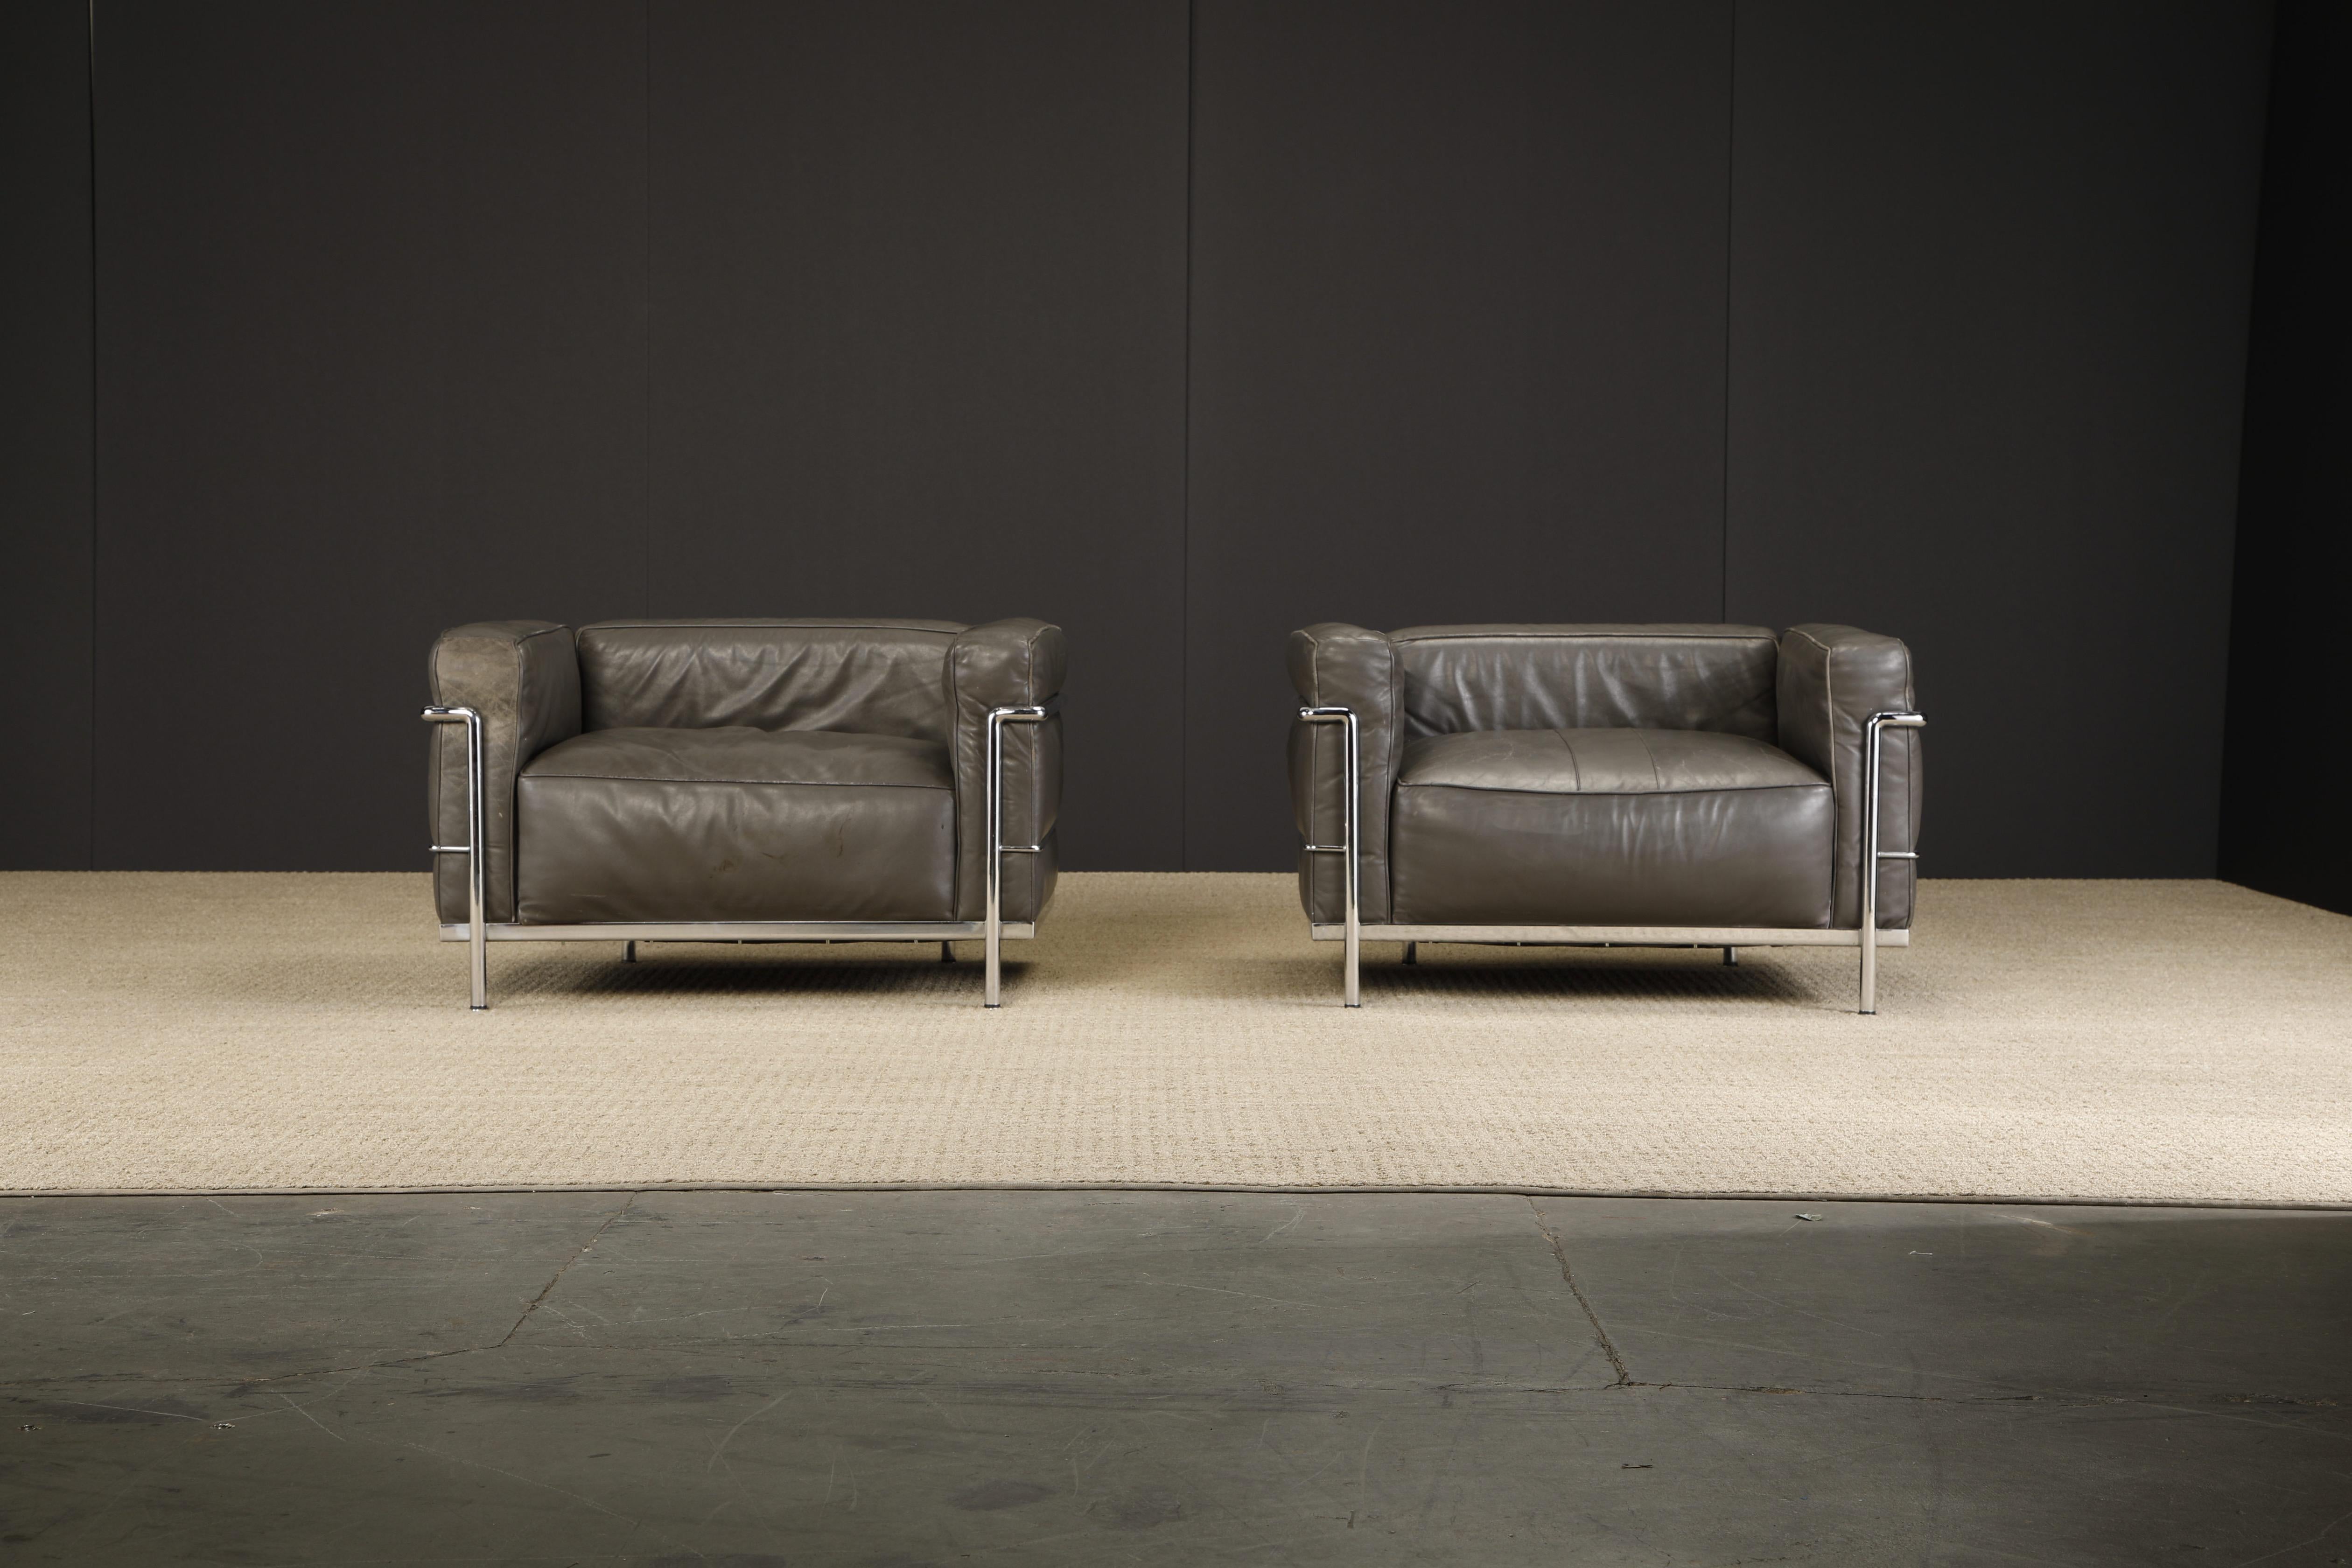 Incroyable paire de fauteuils club 'LC3' en cuir gris, datant du début de l'année de production (idéal pour les collectionneurs), par Le Corbusier, Pierre Jeanneret et Charlotte Perriand pour Cassina, vers les années 1970. Les deux fauteuils sont